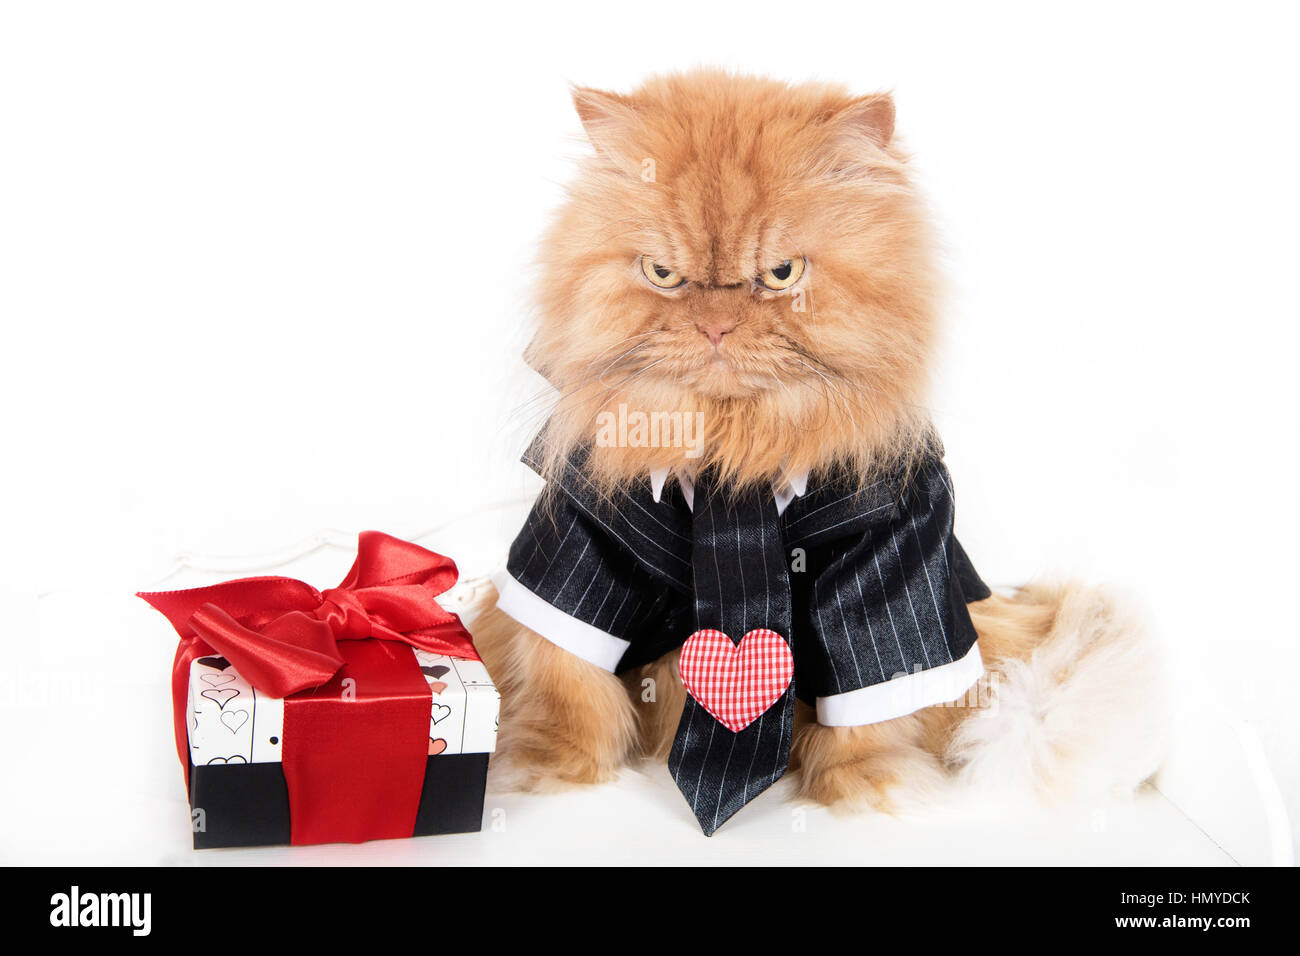 Expresiones de gatos graciosos fotografías e imágenes de alta resolución -  Alamy